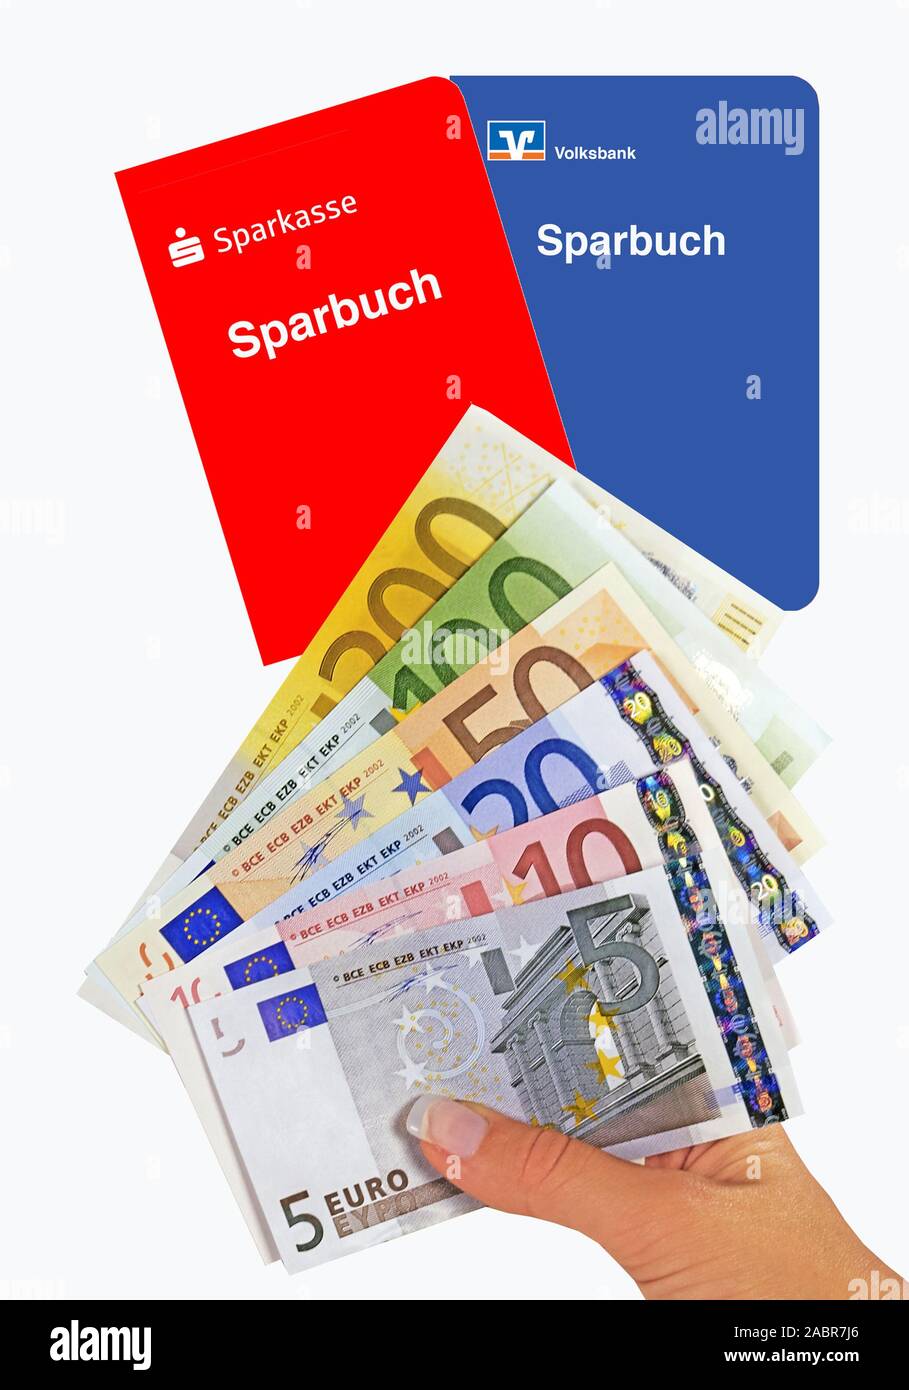 Sparbuch der Sparkasse und Volksbank, Hand mit Euro-Banknoten Stock Photo